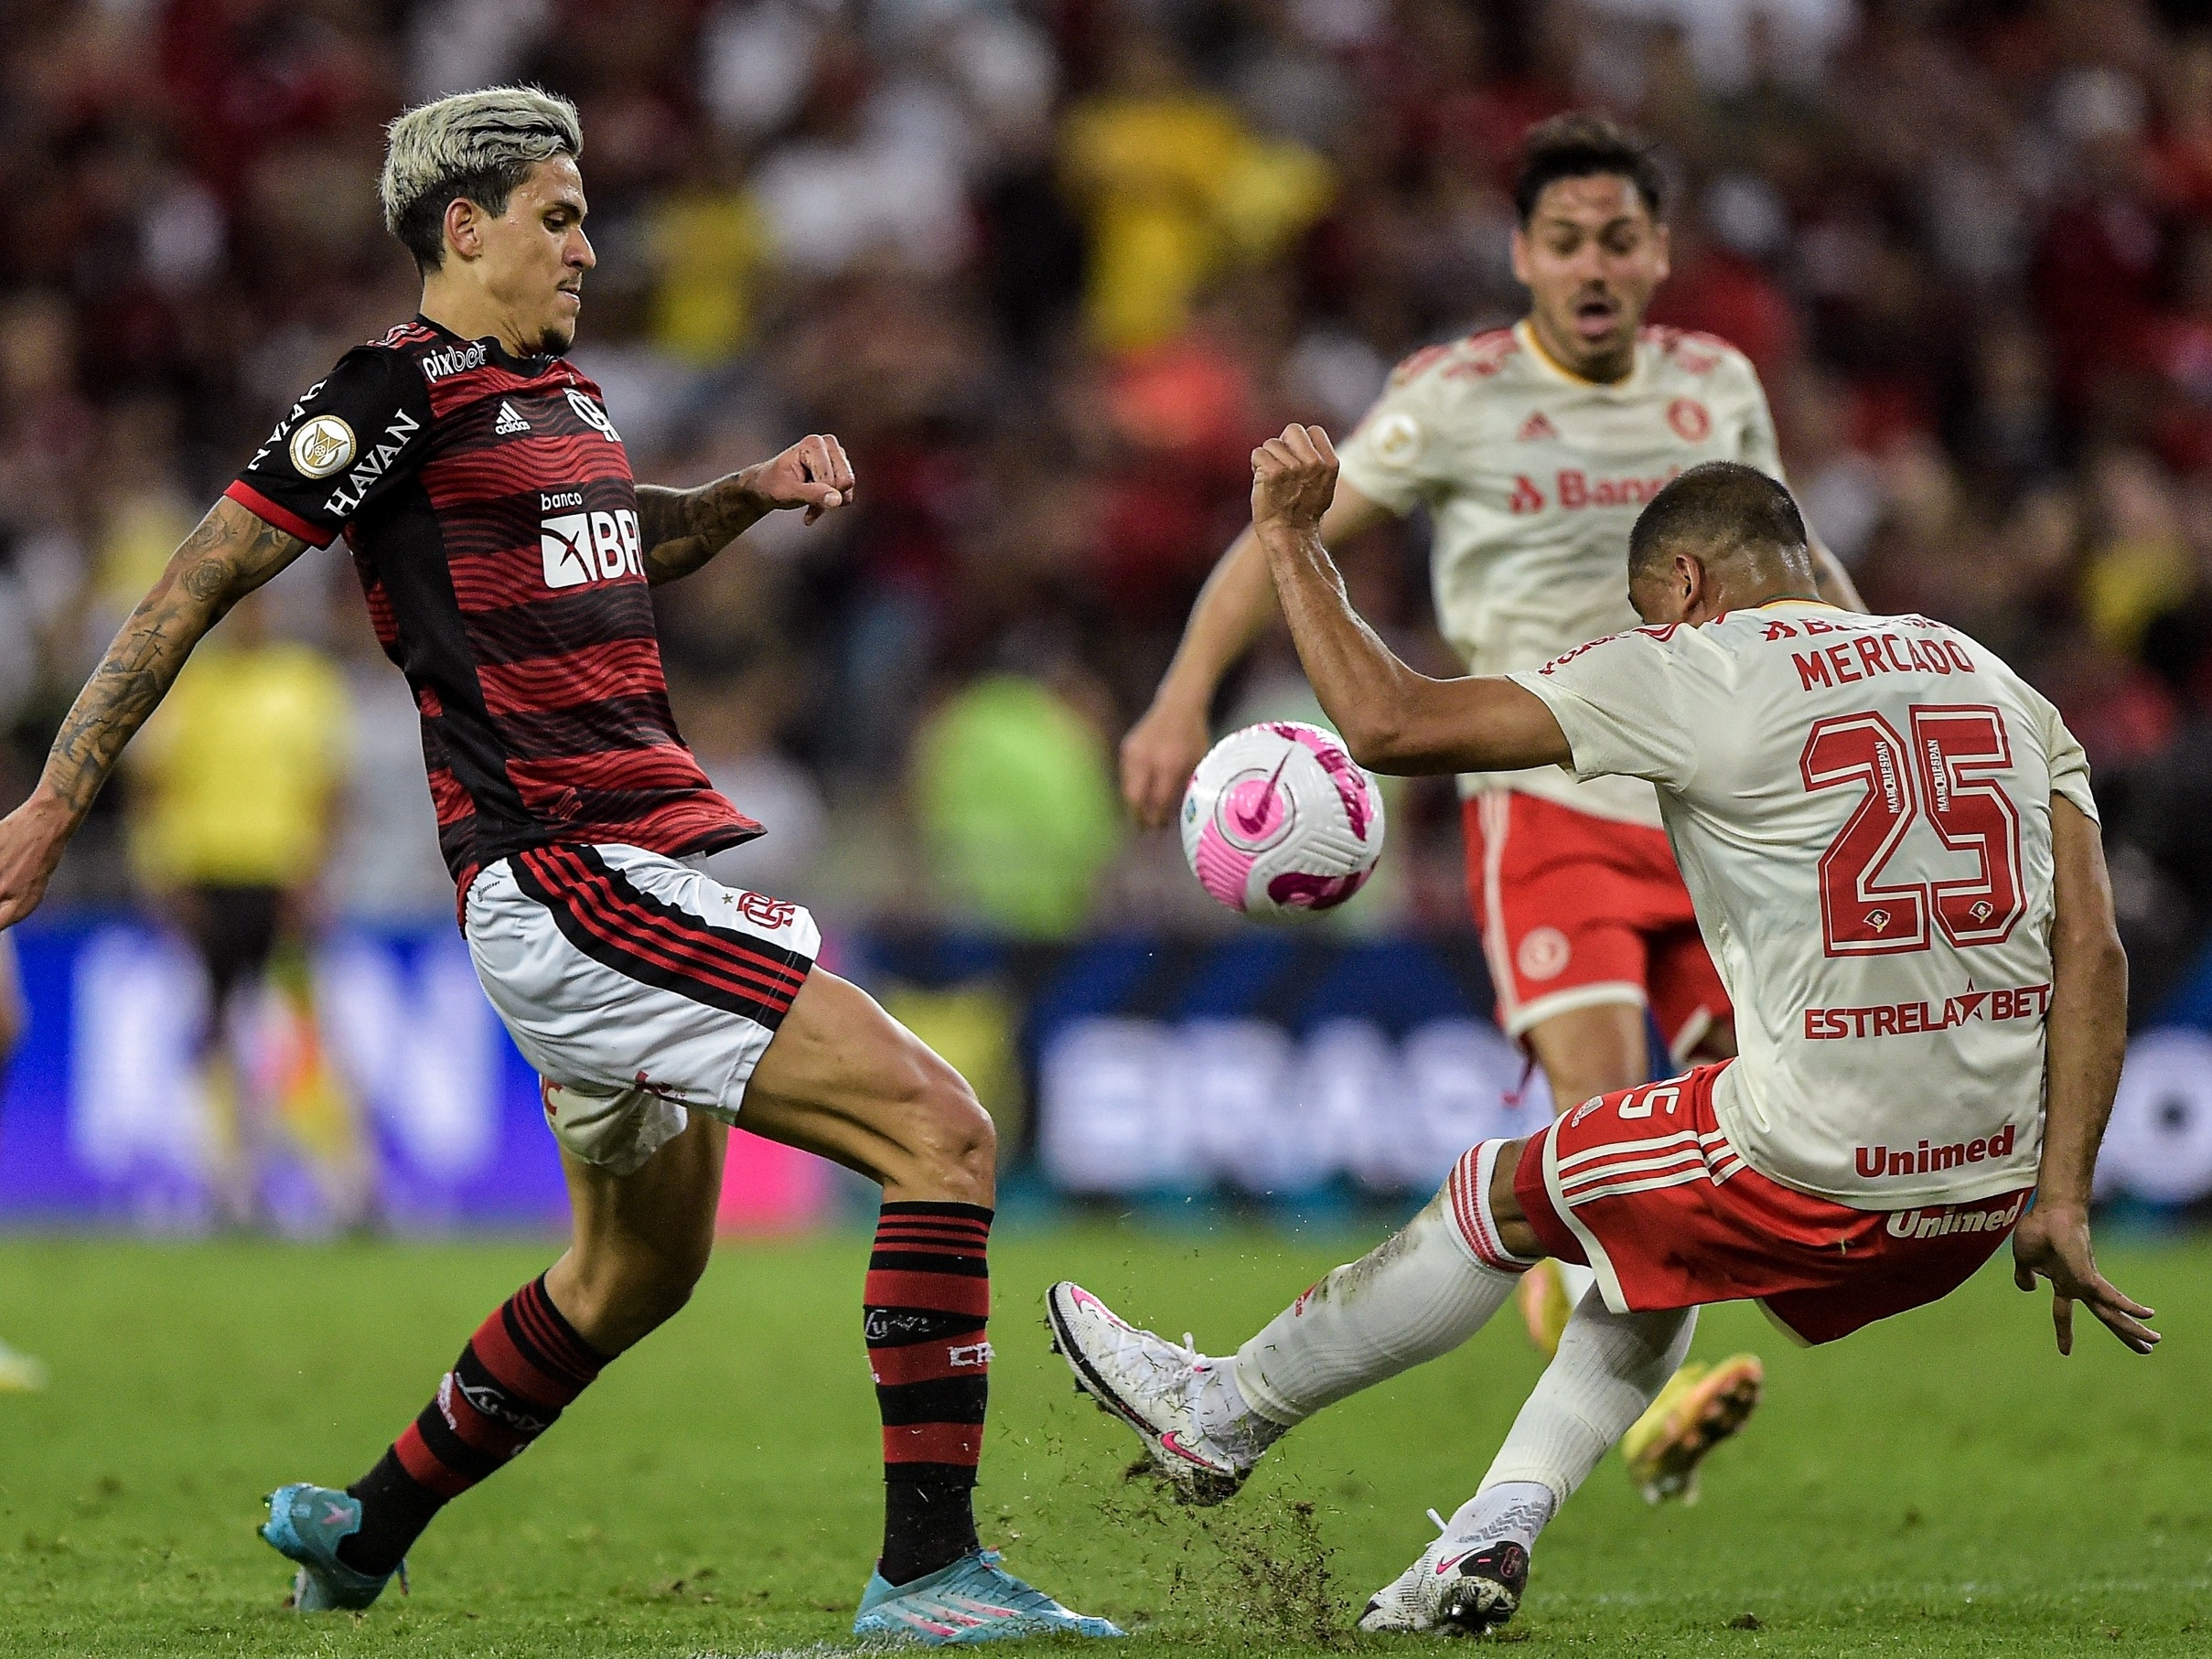 FERJ on X: PRA CIMA DELES Hoje, às 14h30, o @Flamengo, campeão